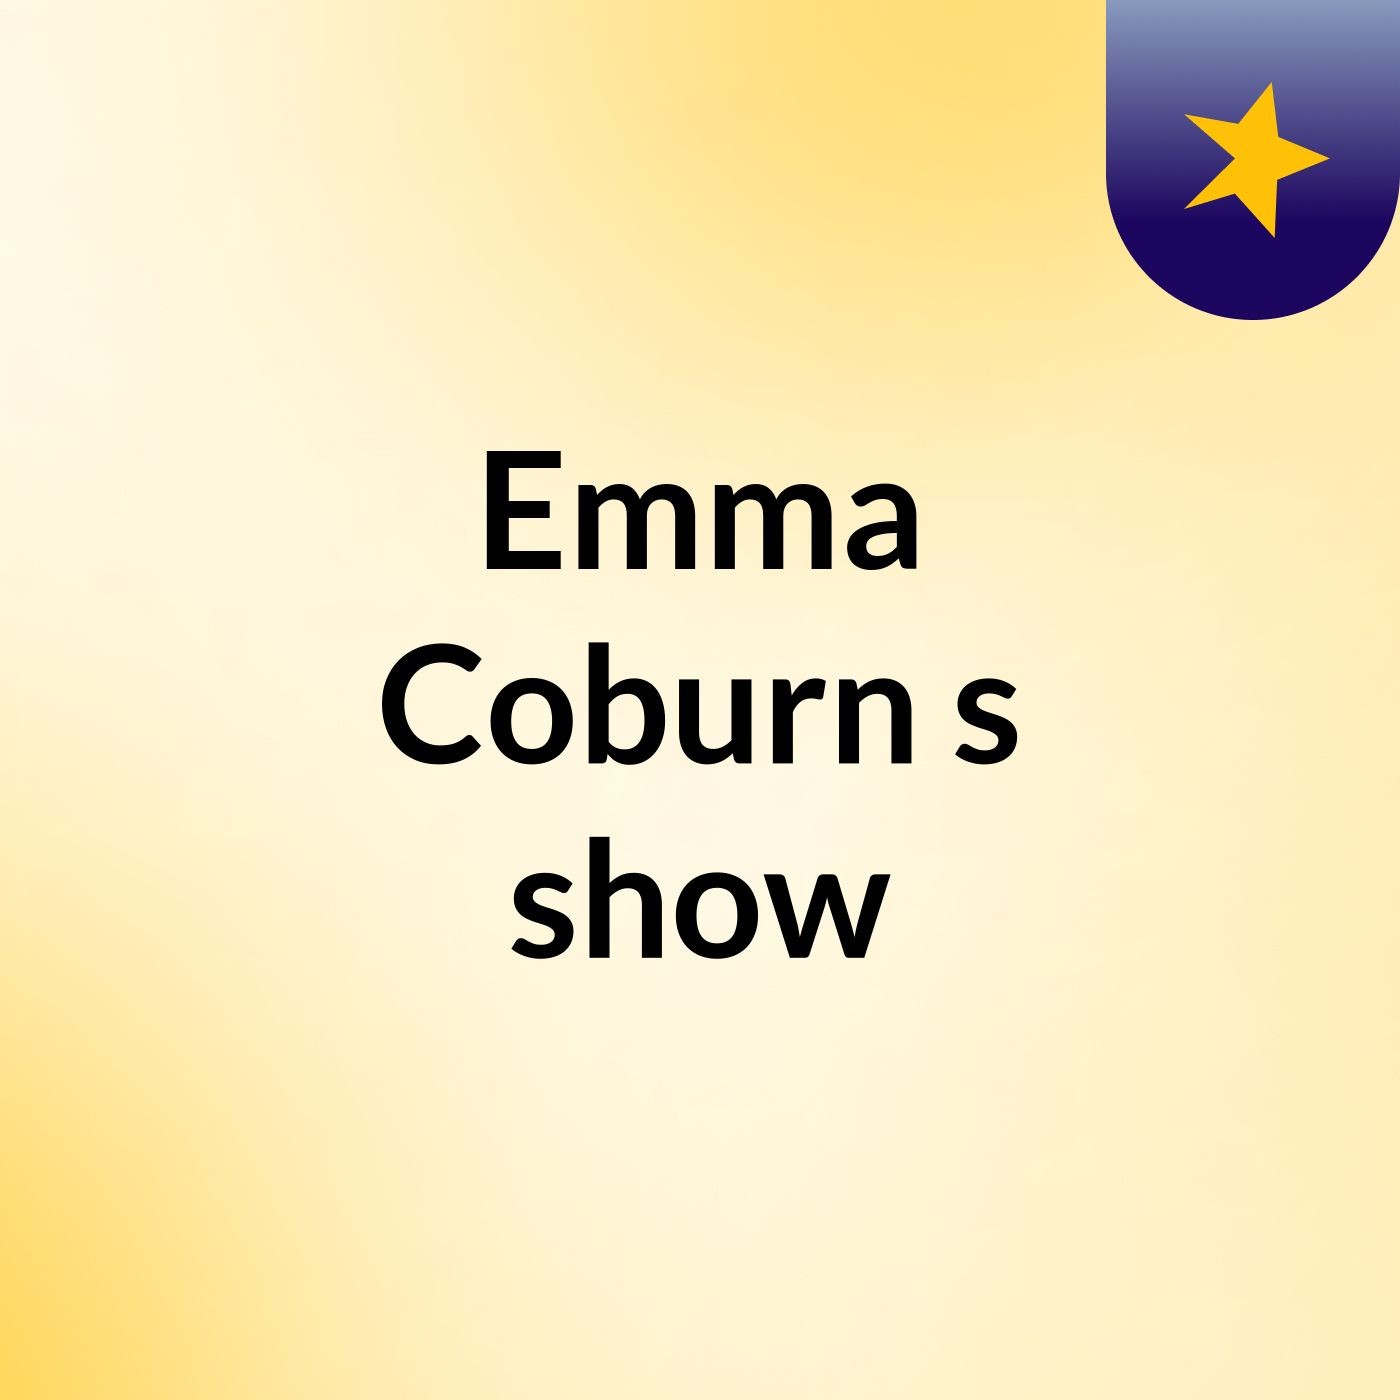 Emma Coburn's show